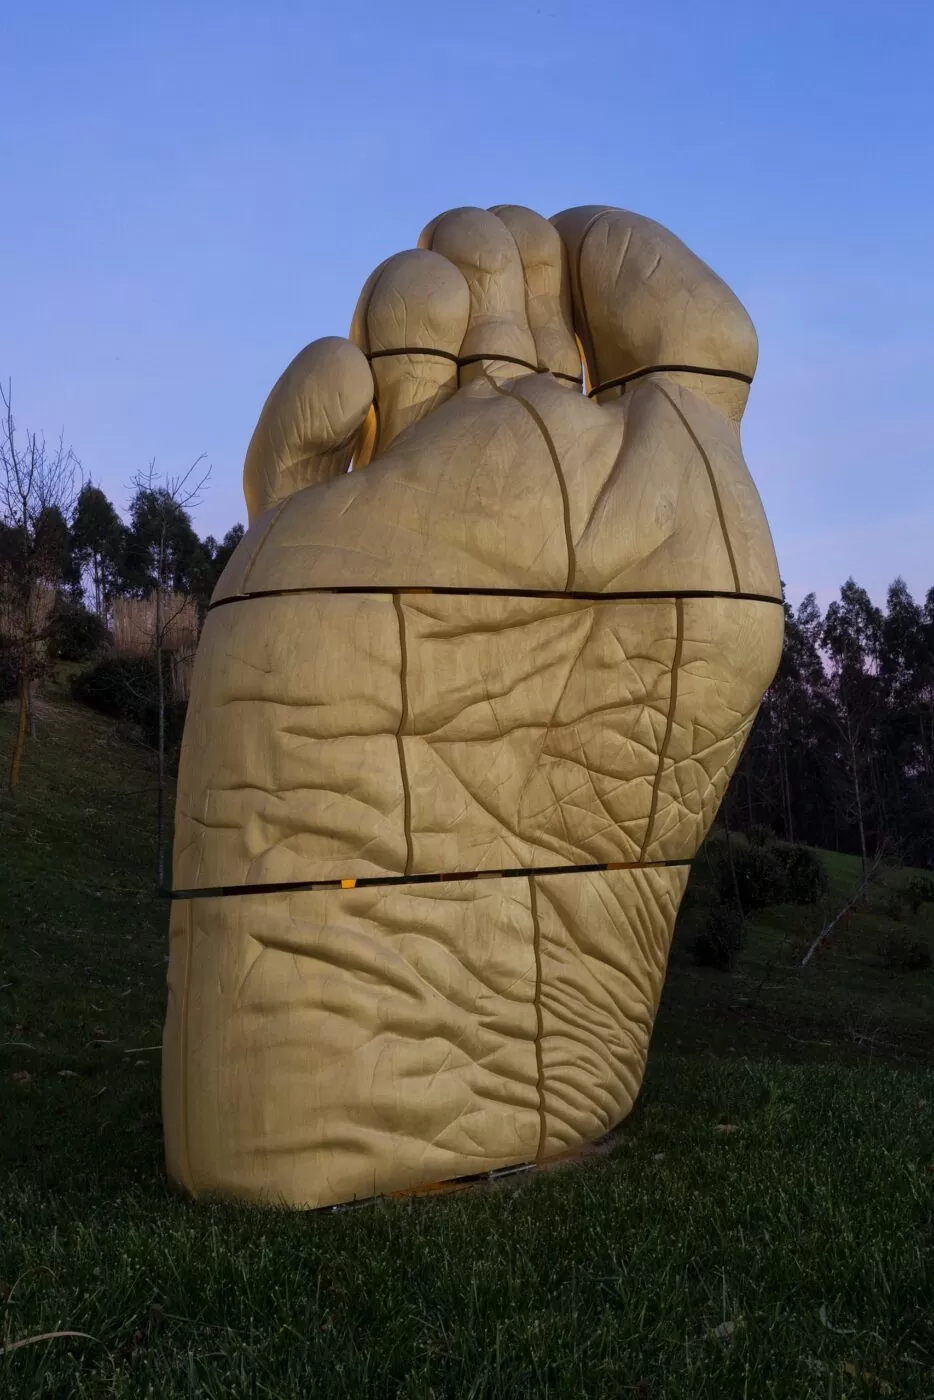 Eine Skulptur in Form eines riesigen Fusses, vollständig gefertigt aus Accoya-Holz